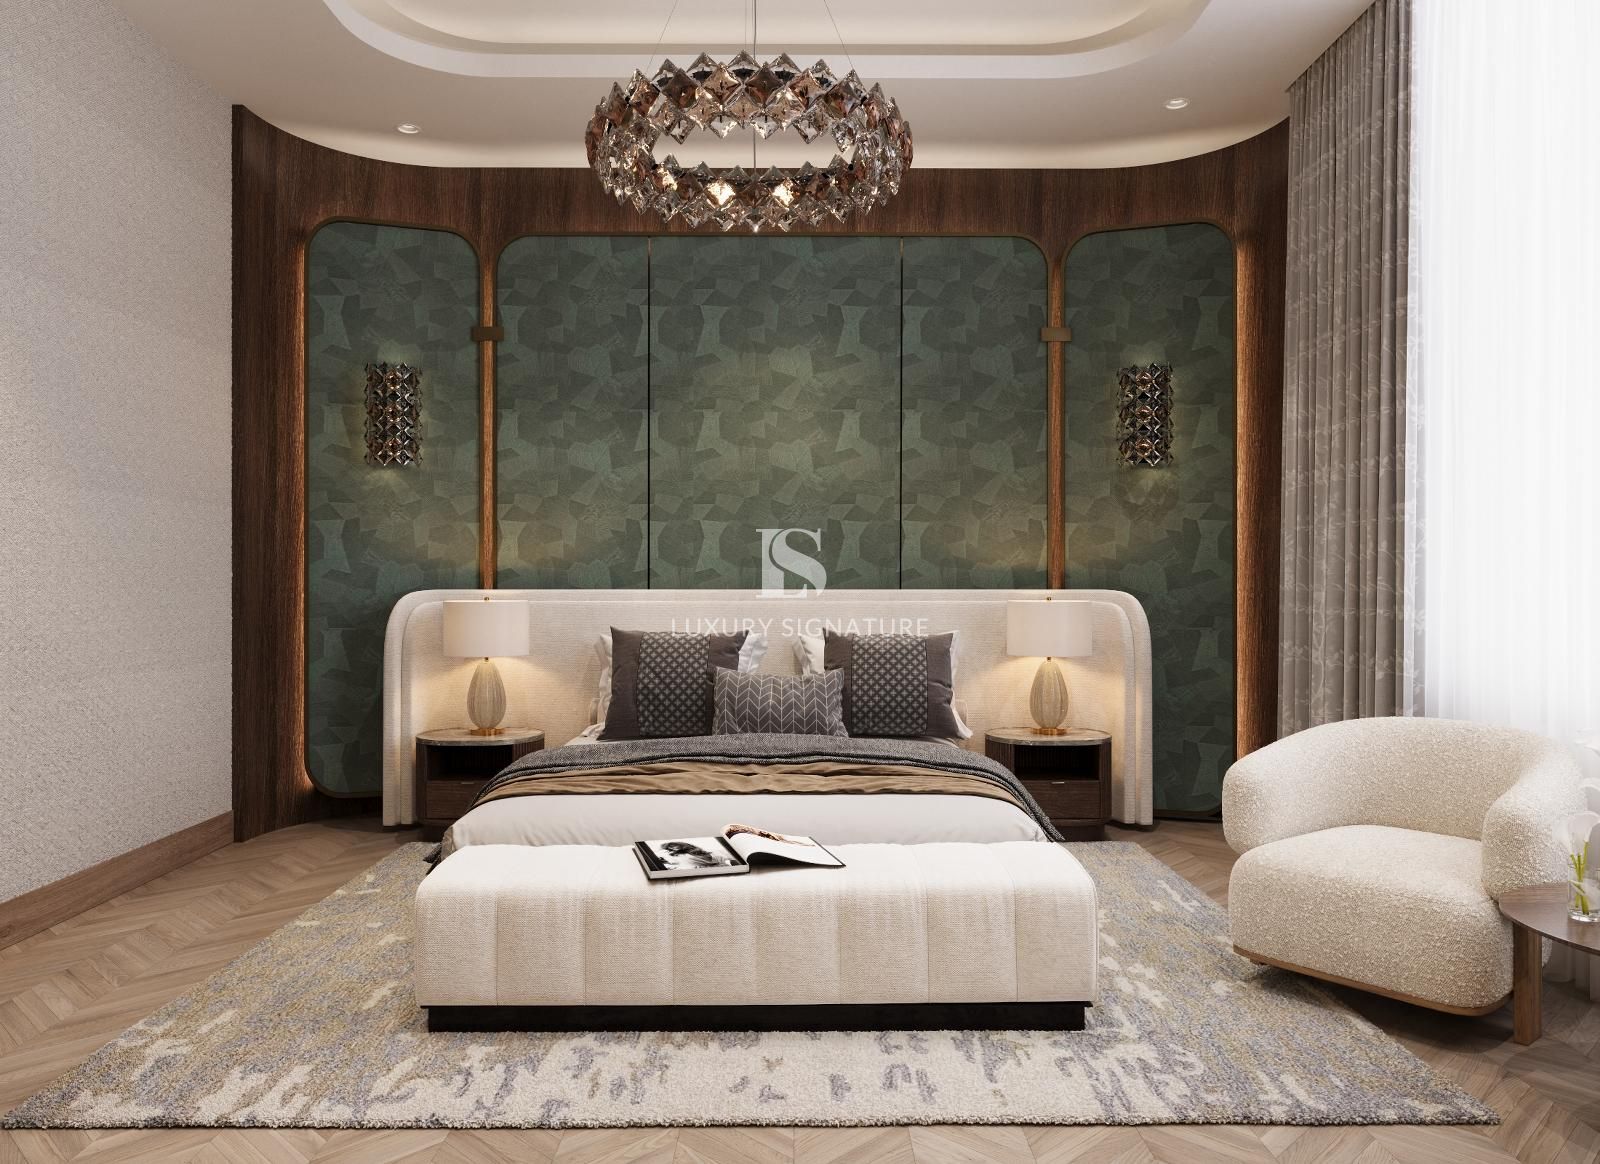 Luxury Signature interior Design Pic Ru